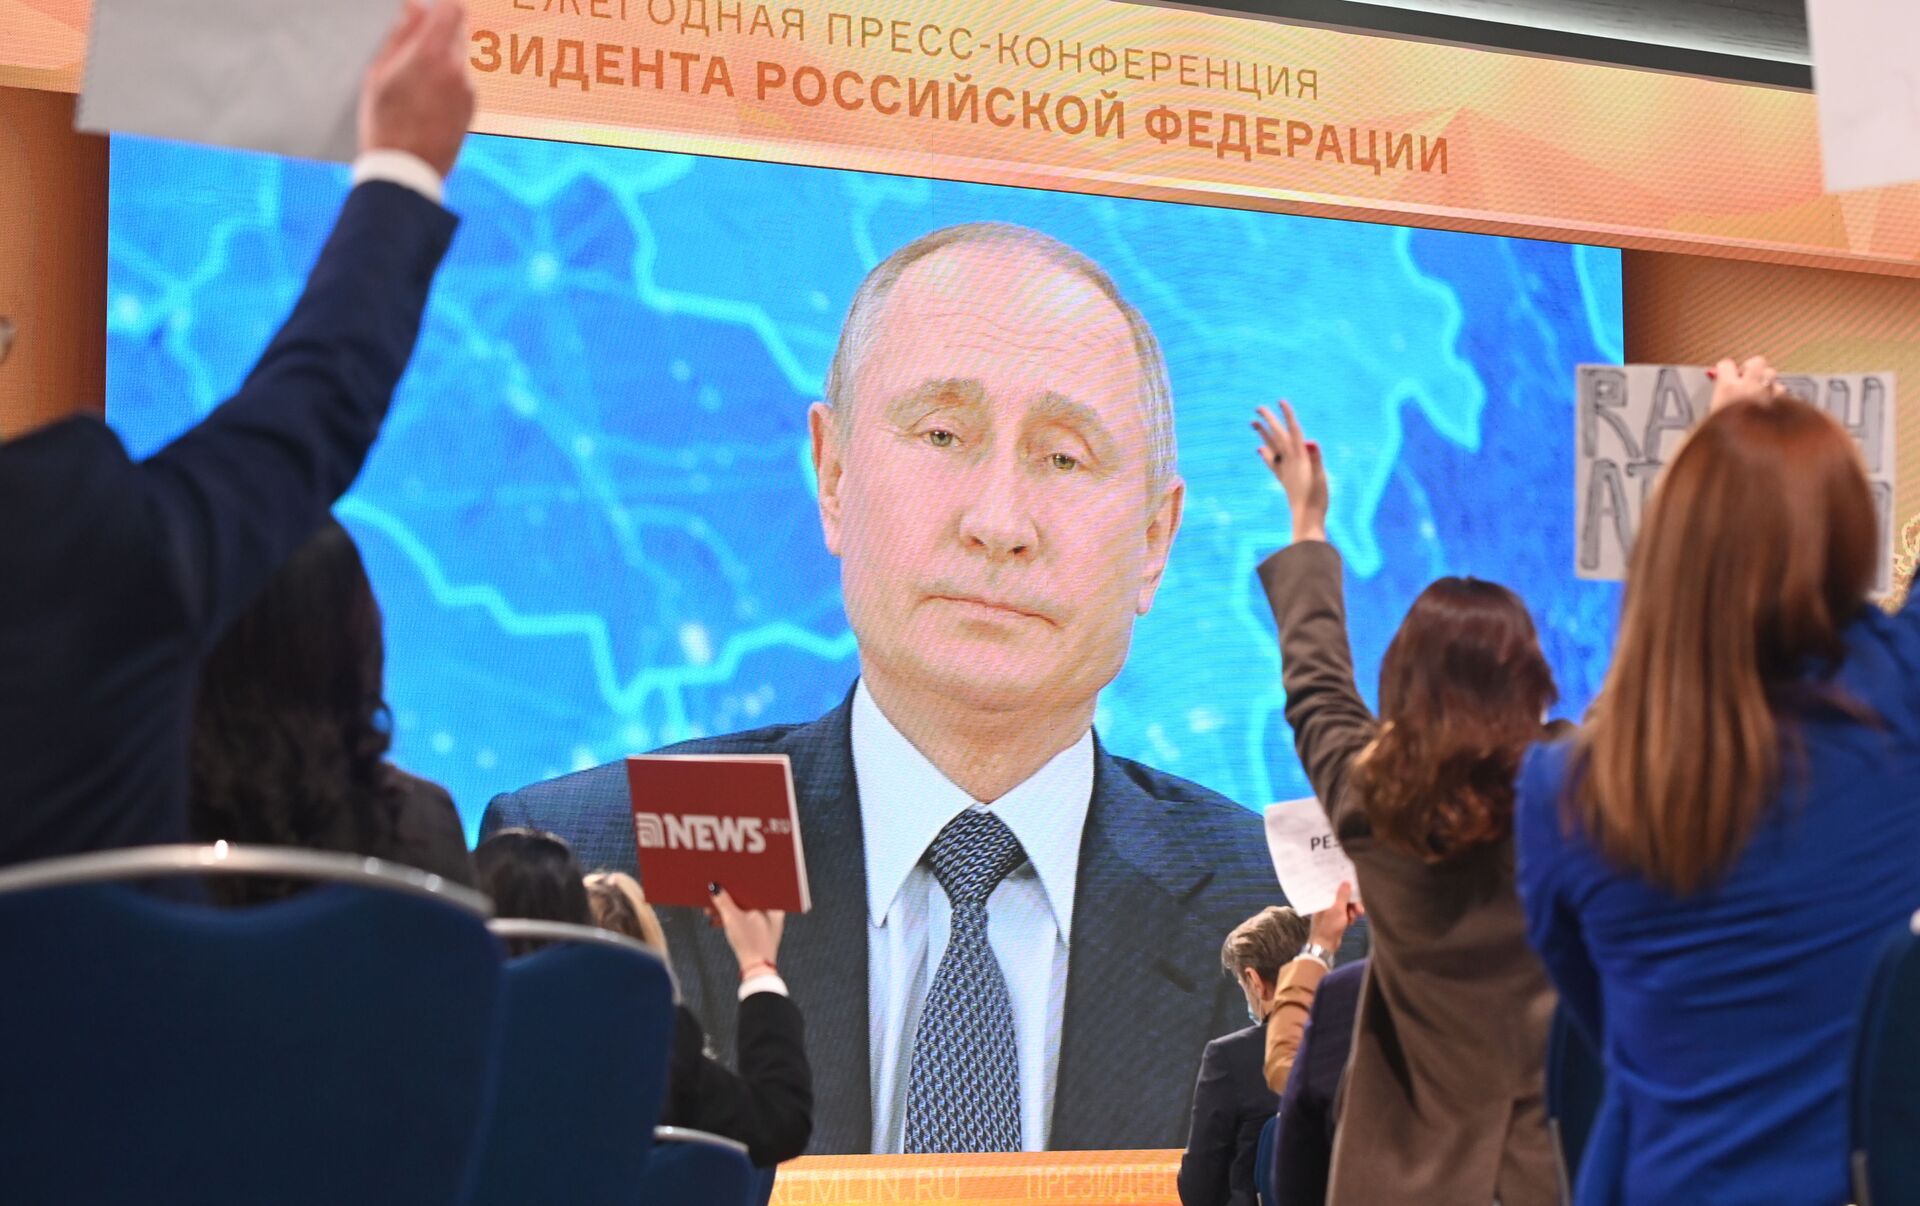 Иносми о выборах в россии